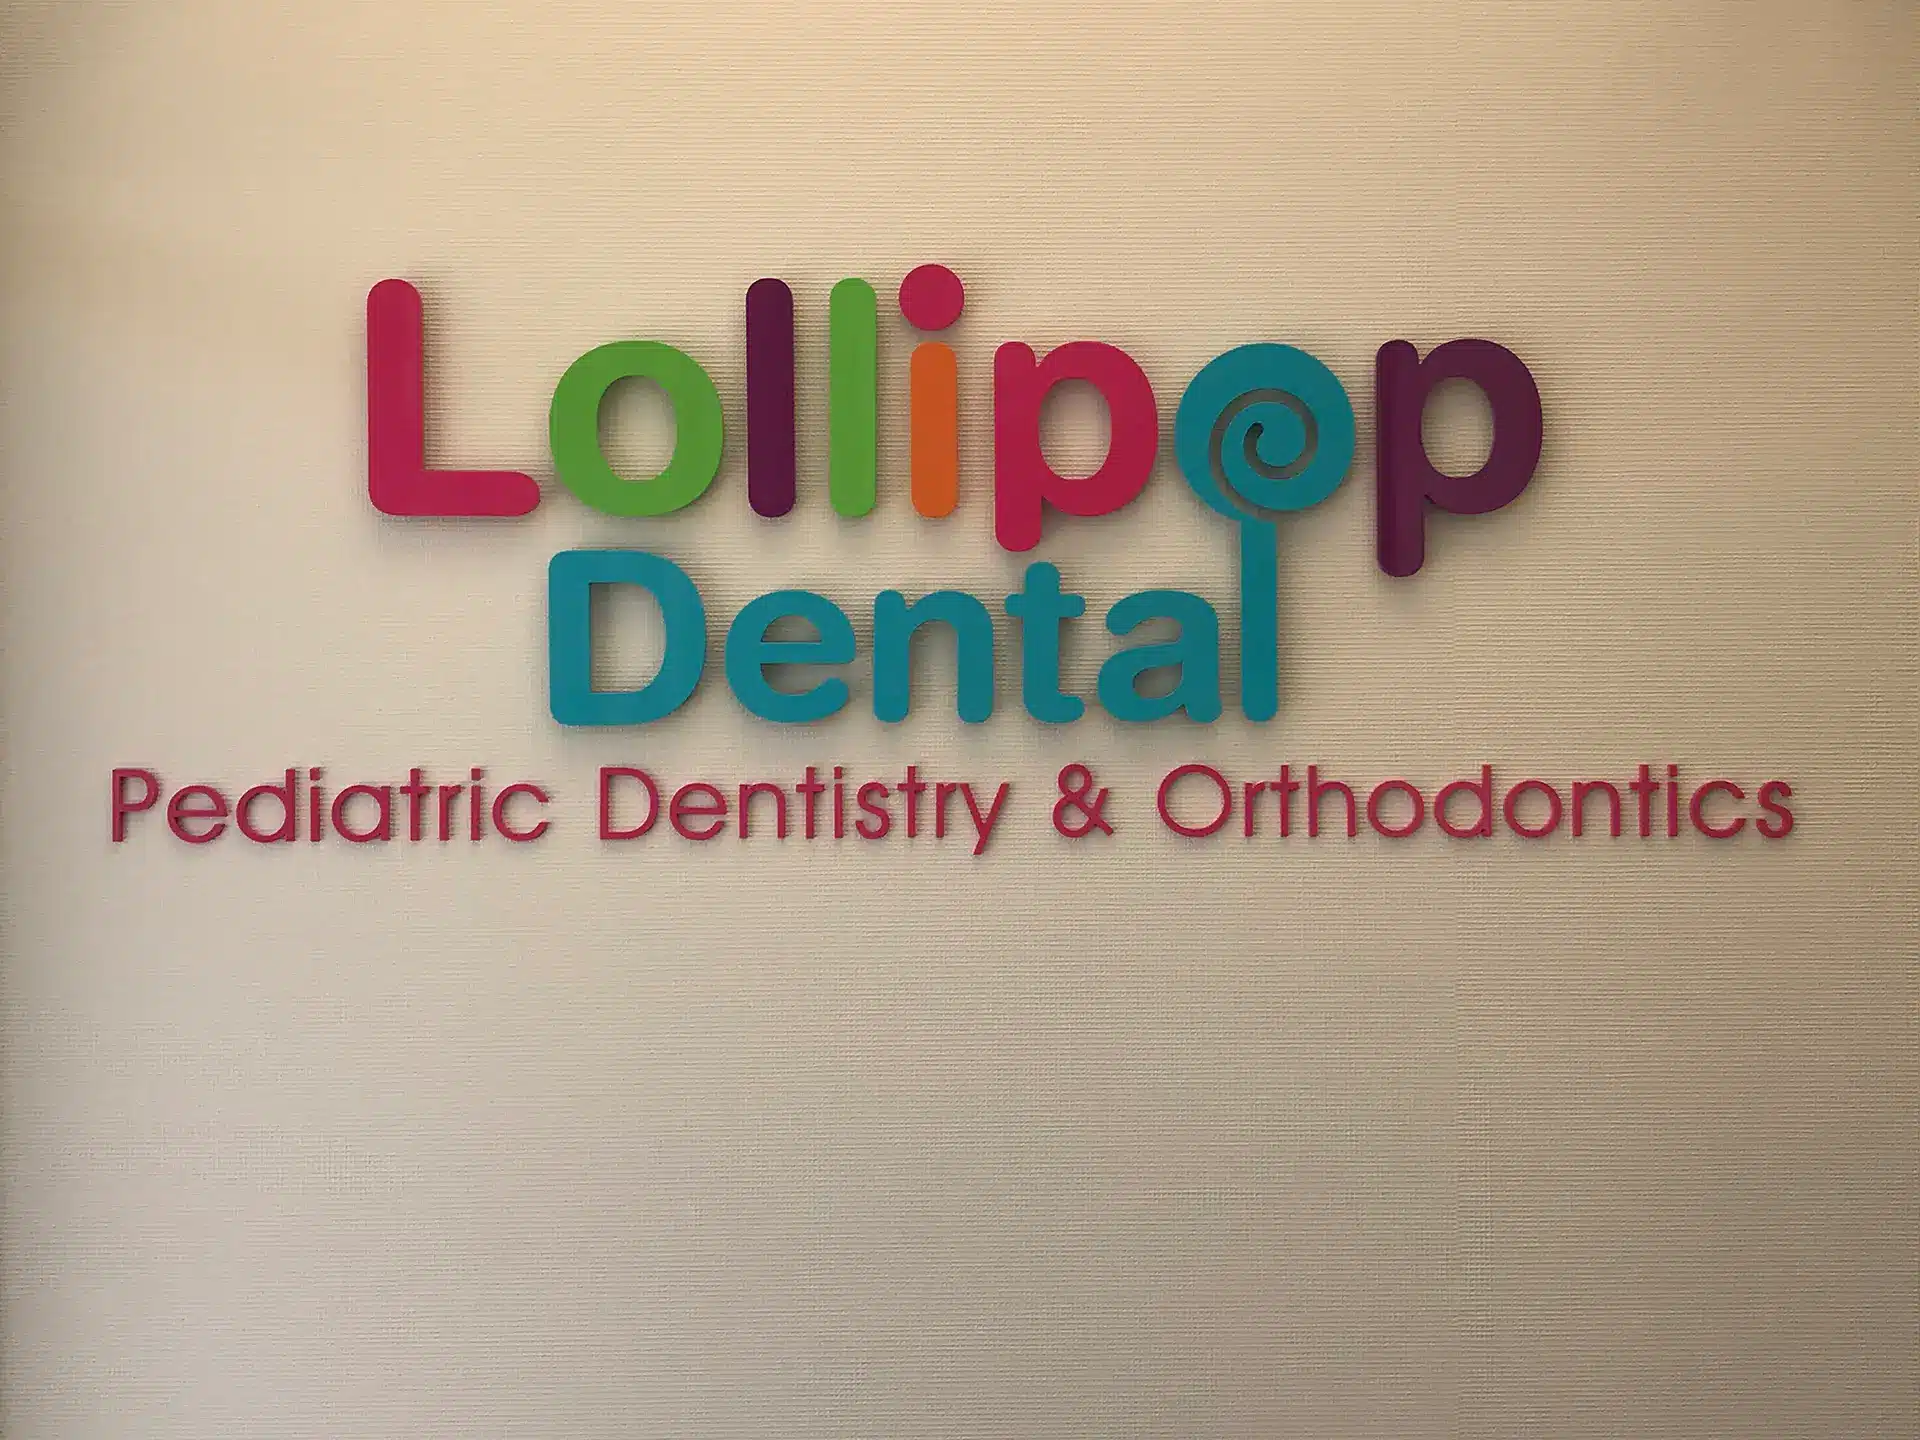 Lollipop Dental